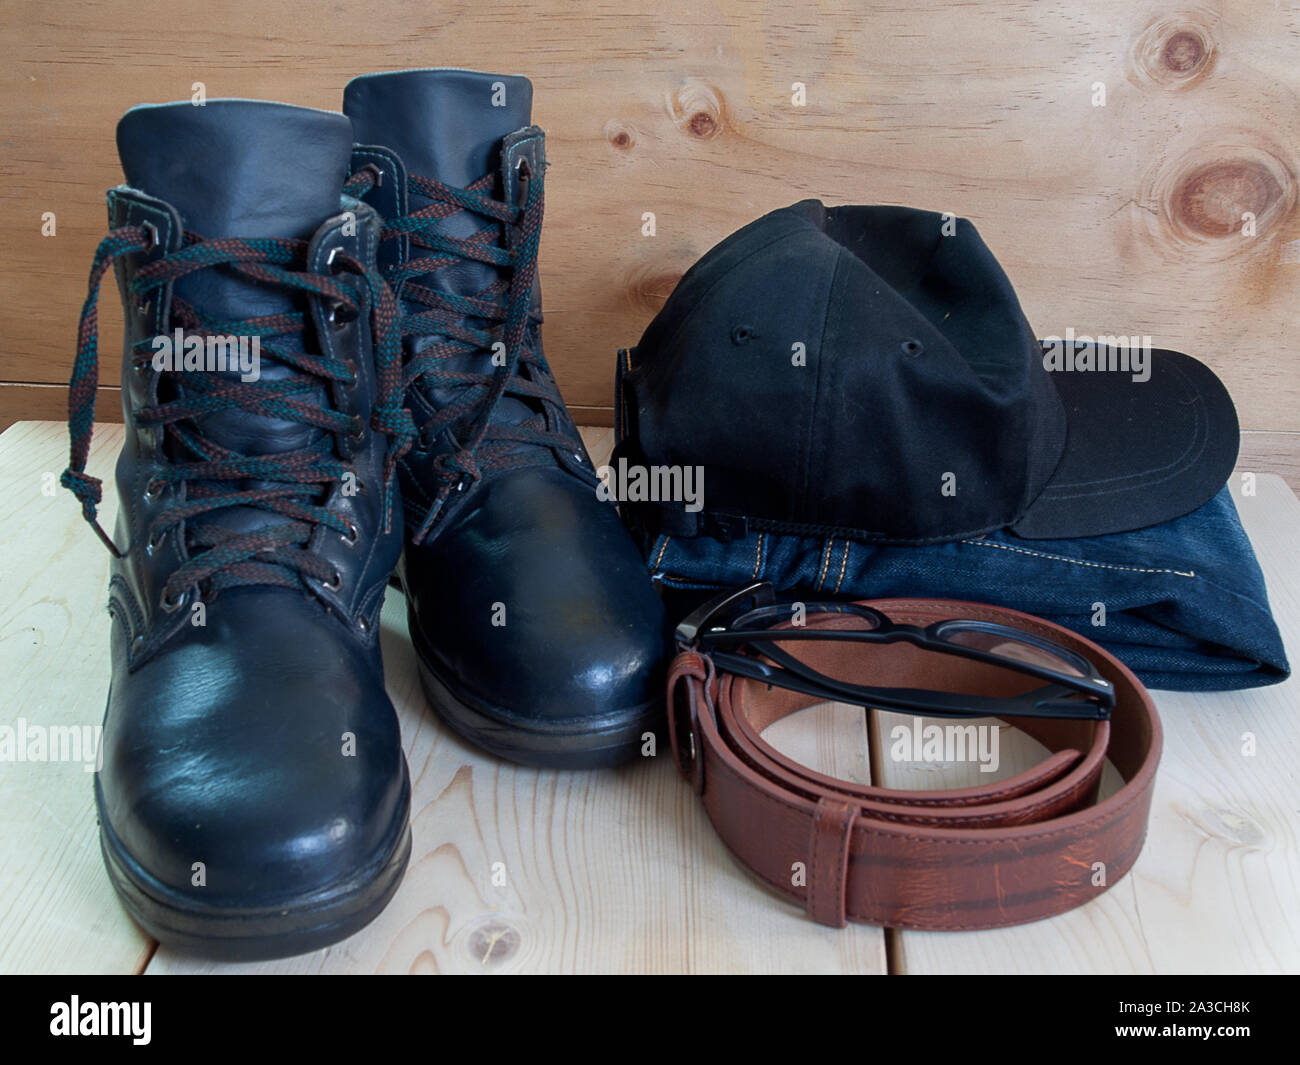 Chaussures, ceintures, chapeau, lunettes de soleil et un jean , placé sur un plancher en bois. Banque D'Images